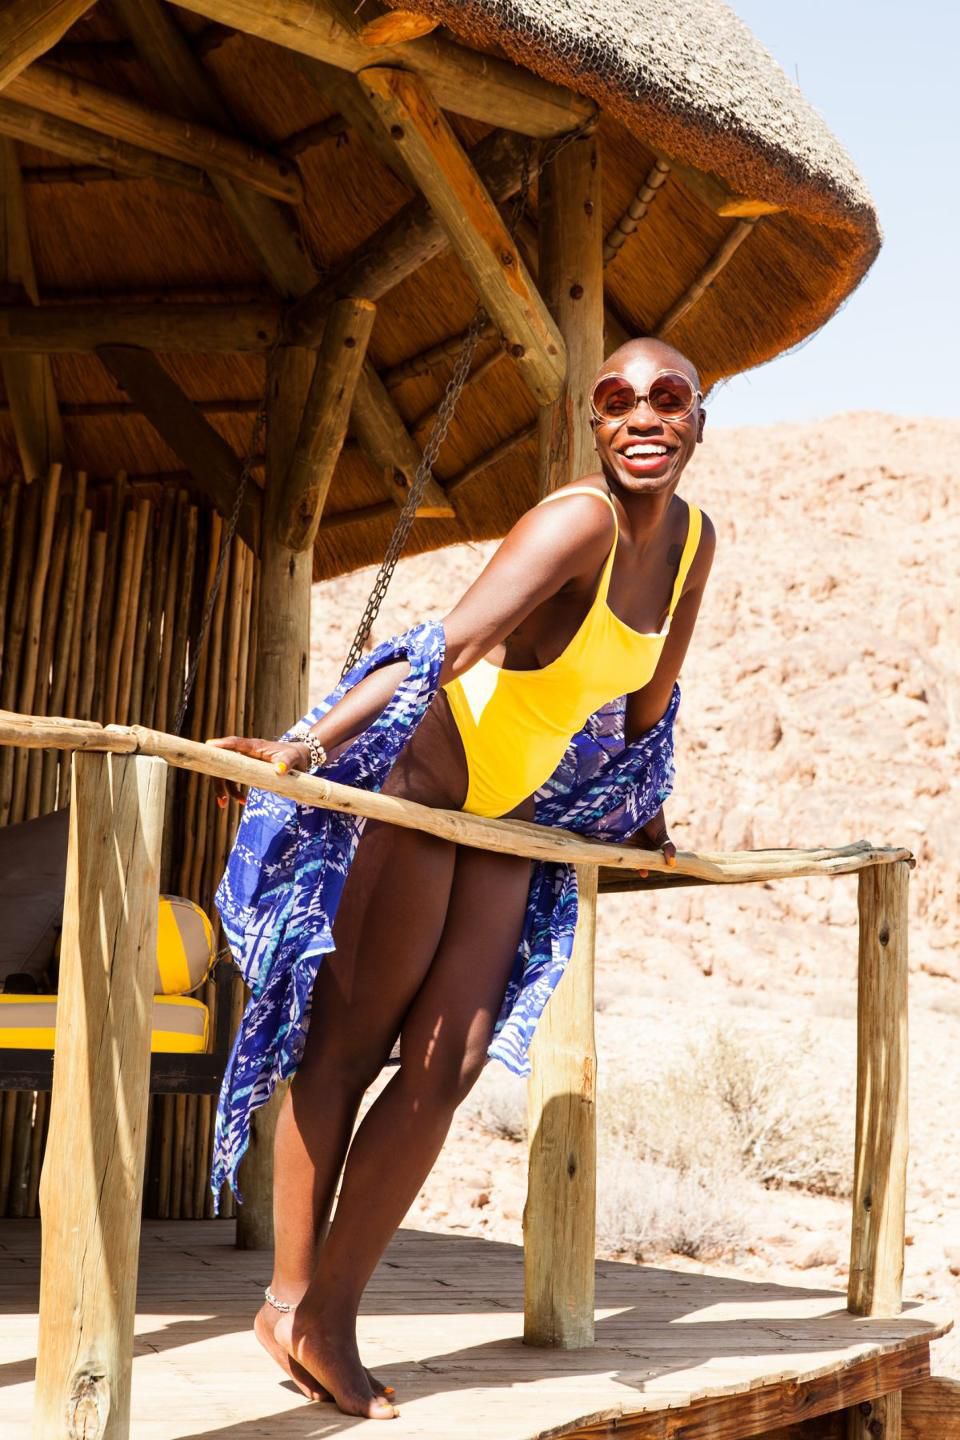 Dù ở giữa sa mạc ở Namibia, Nabongo vẫn có một bức ảnh trong bộ đồ bơi màu vàng nổi bật để đưa lên Instagram - thứ mà theo nữ doanh nhân, đã giúp cô xây dựng thương hiệu cá nhân trên mạng xã hội này. 